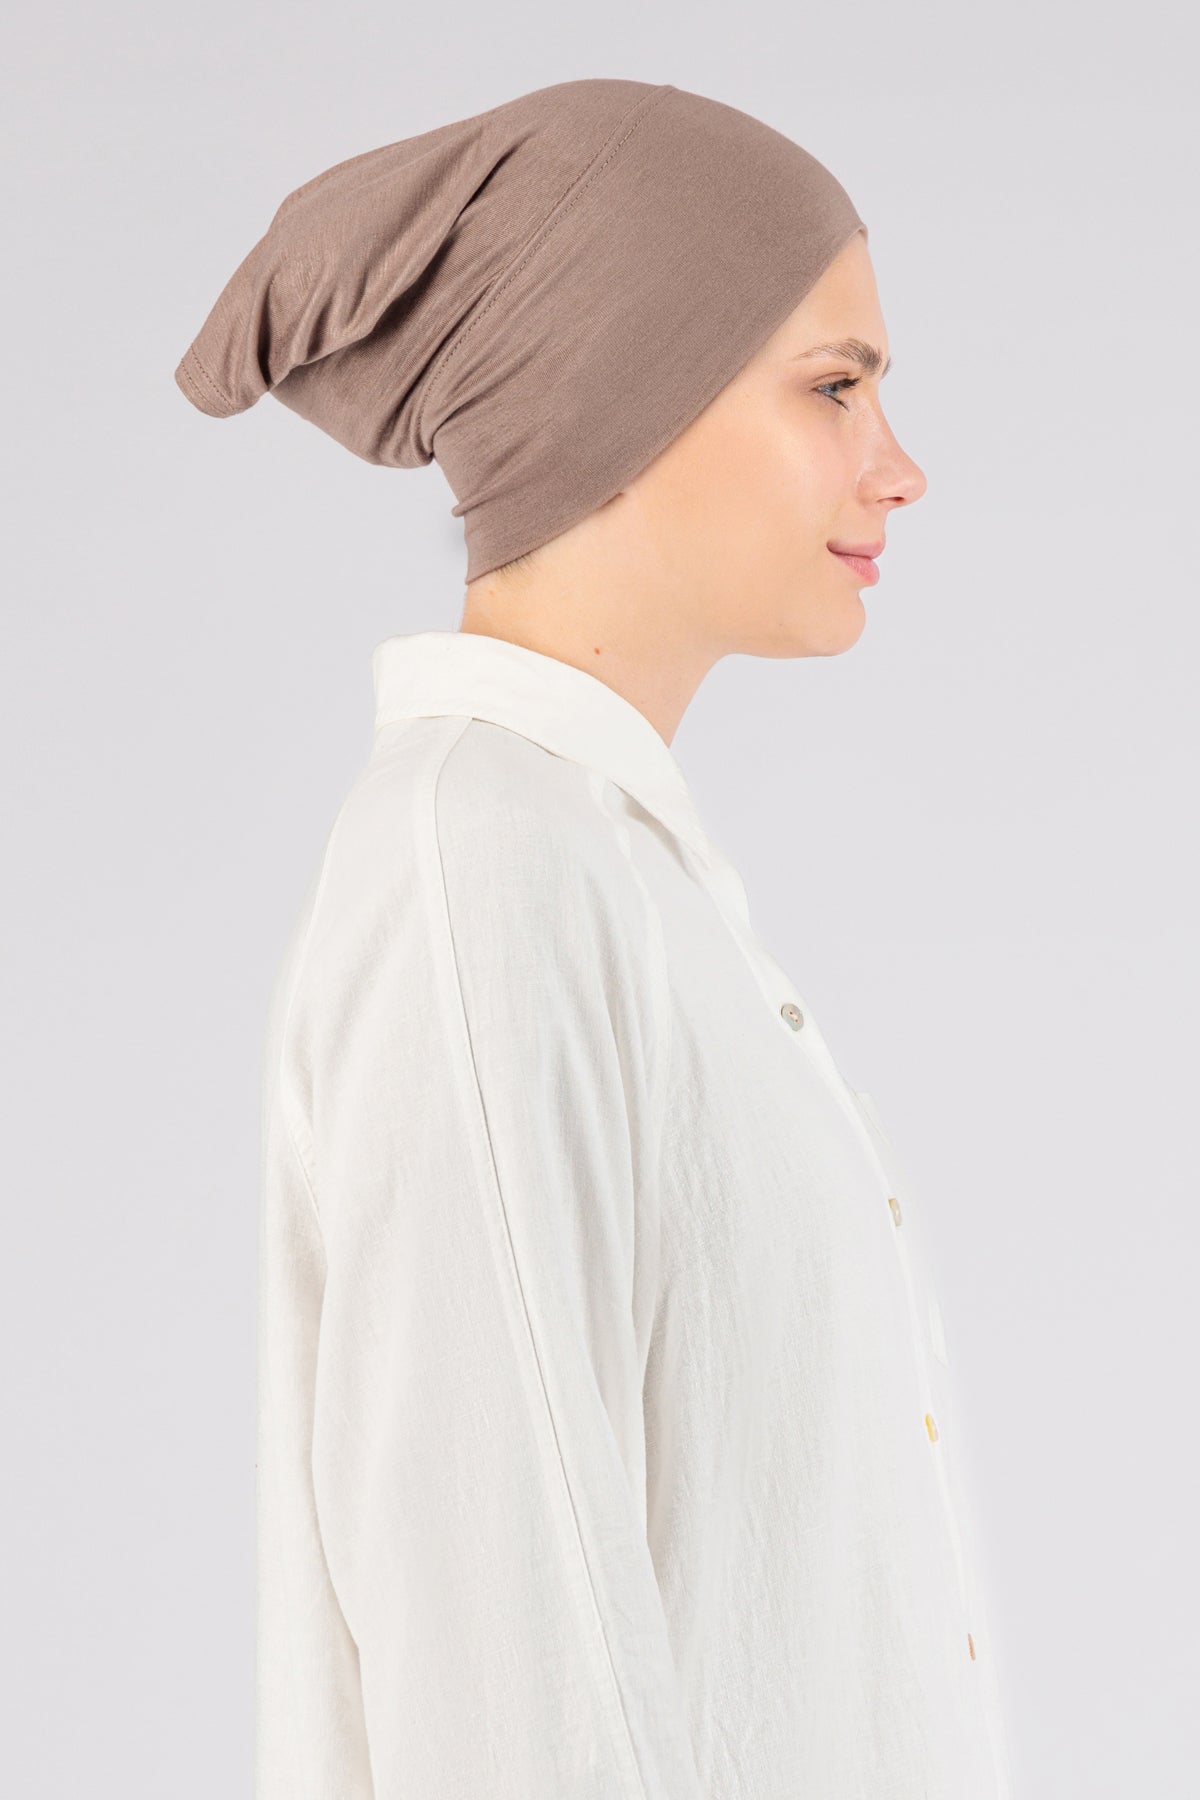 US - Matching Jersey Hijab Set - Blush